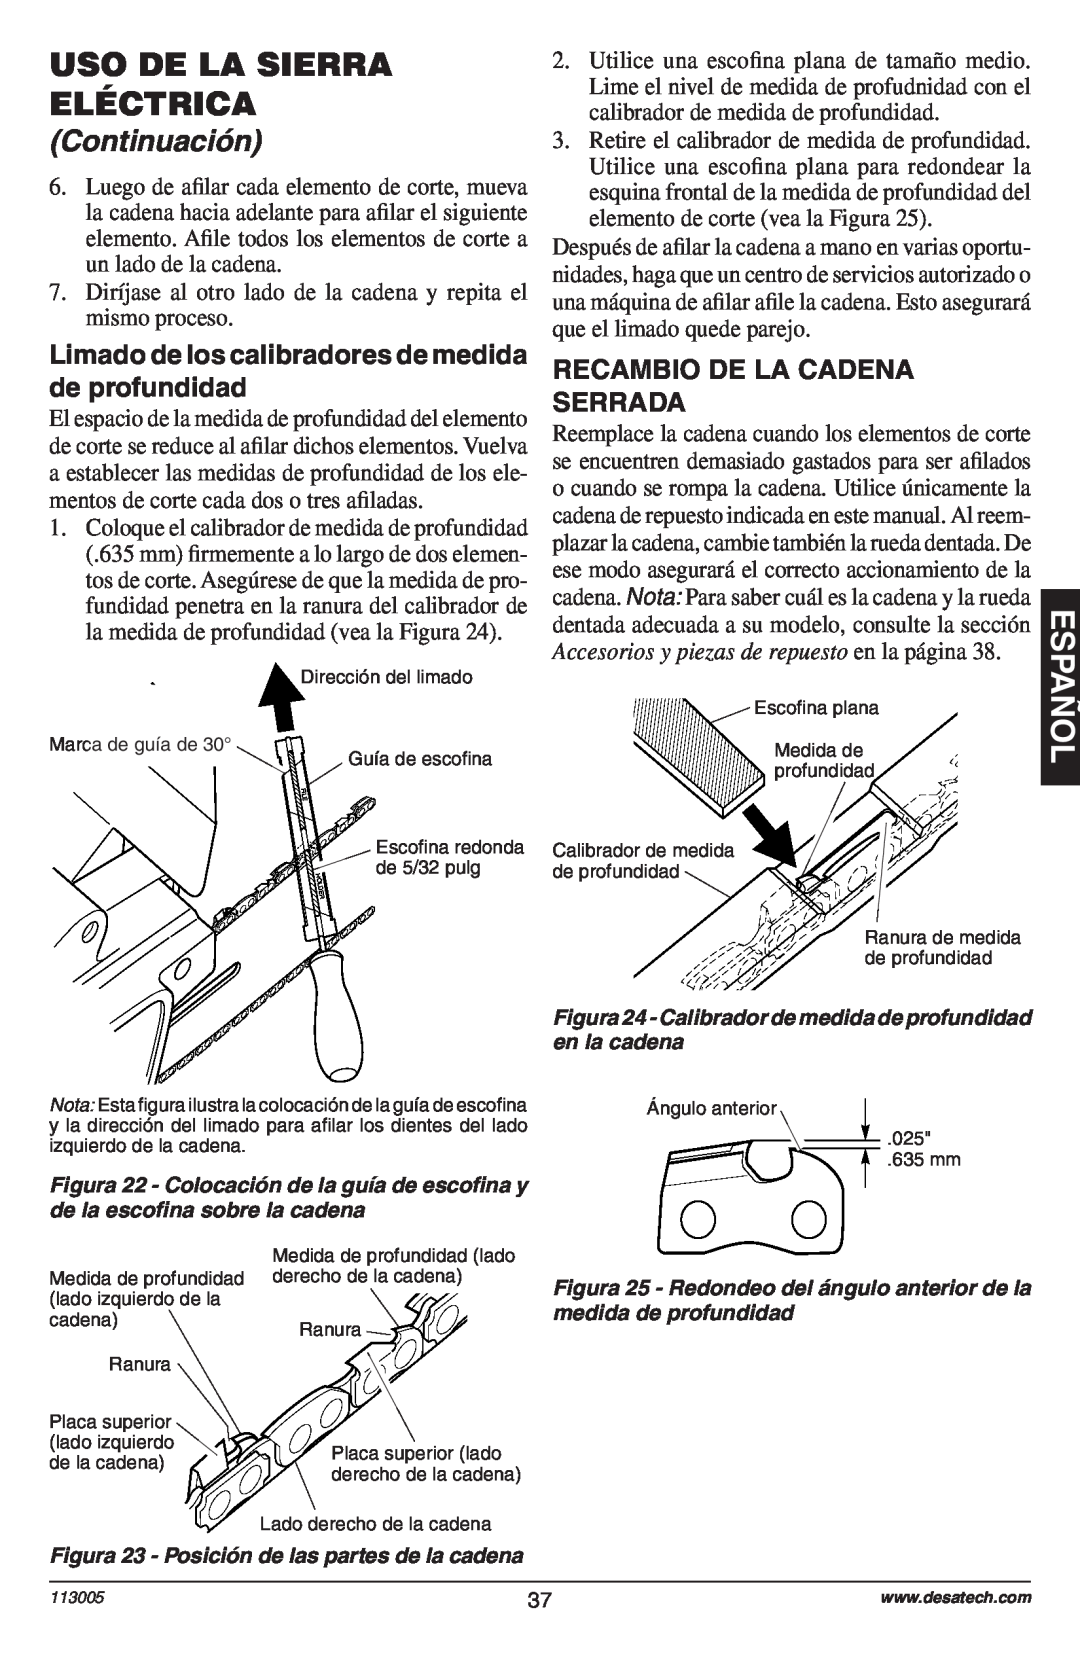 Remington Power Tools Electric Chain Saw Limado de los calibradores de medida de profundidad, Uso De La Sierra Eléctrica 